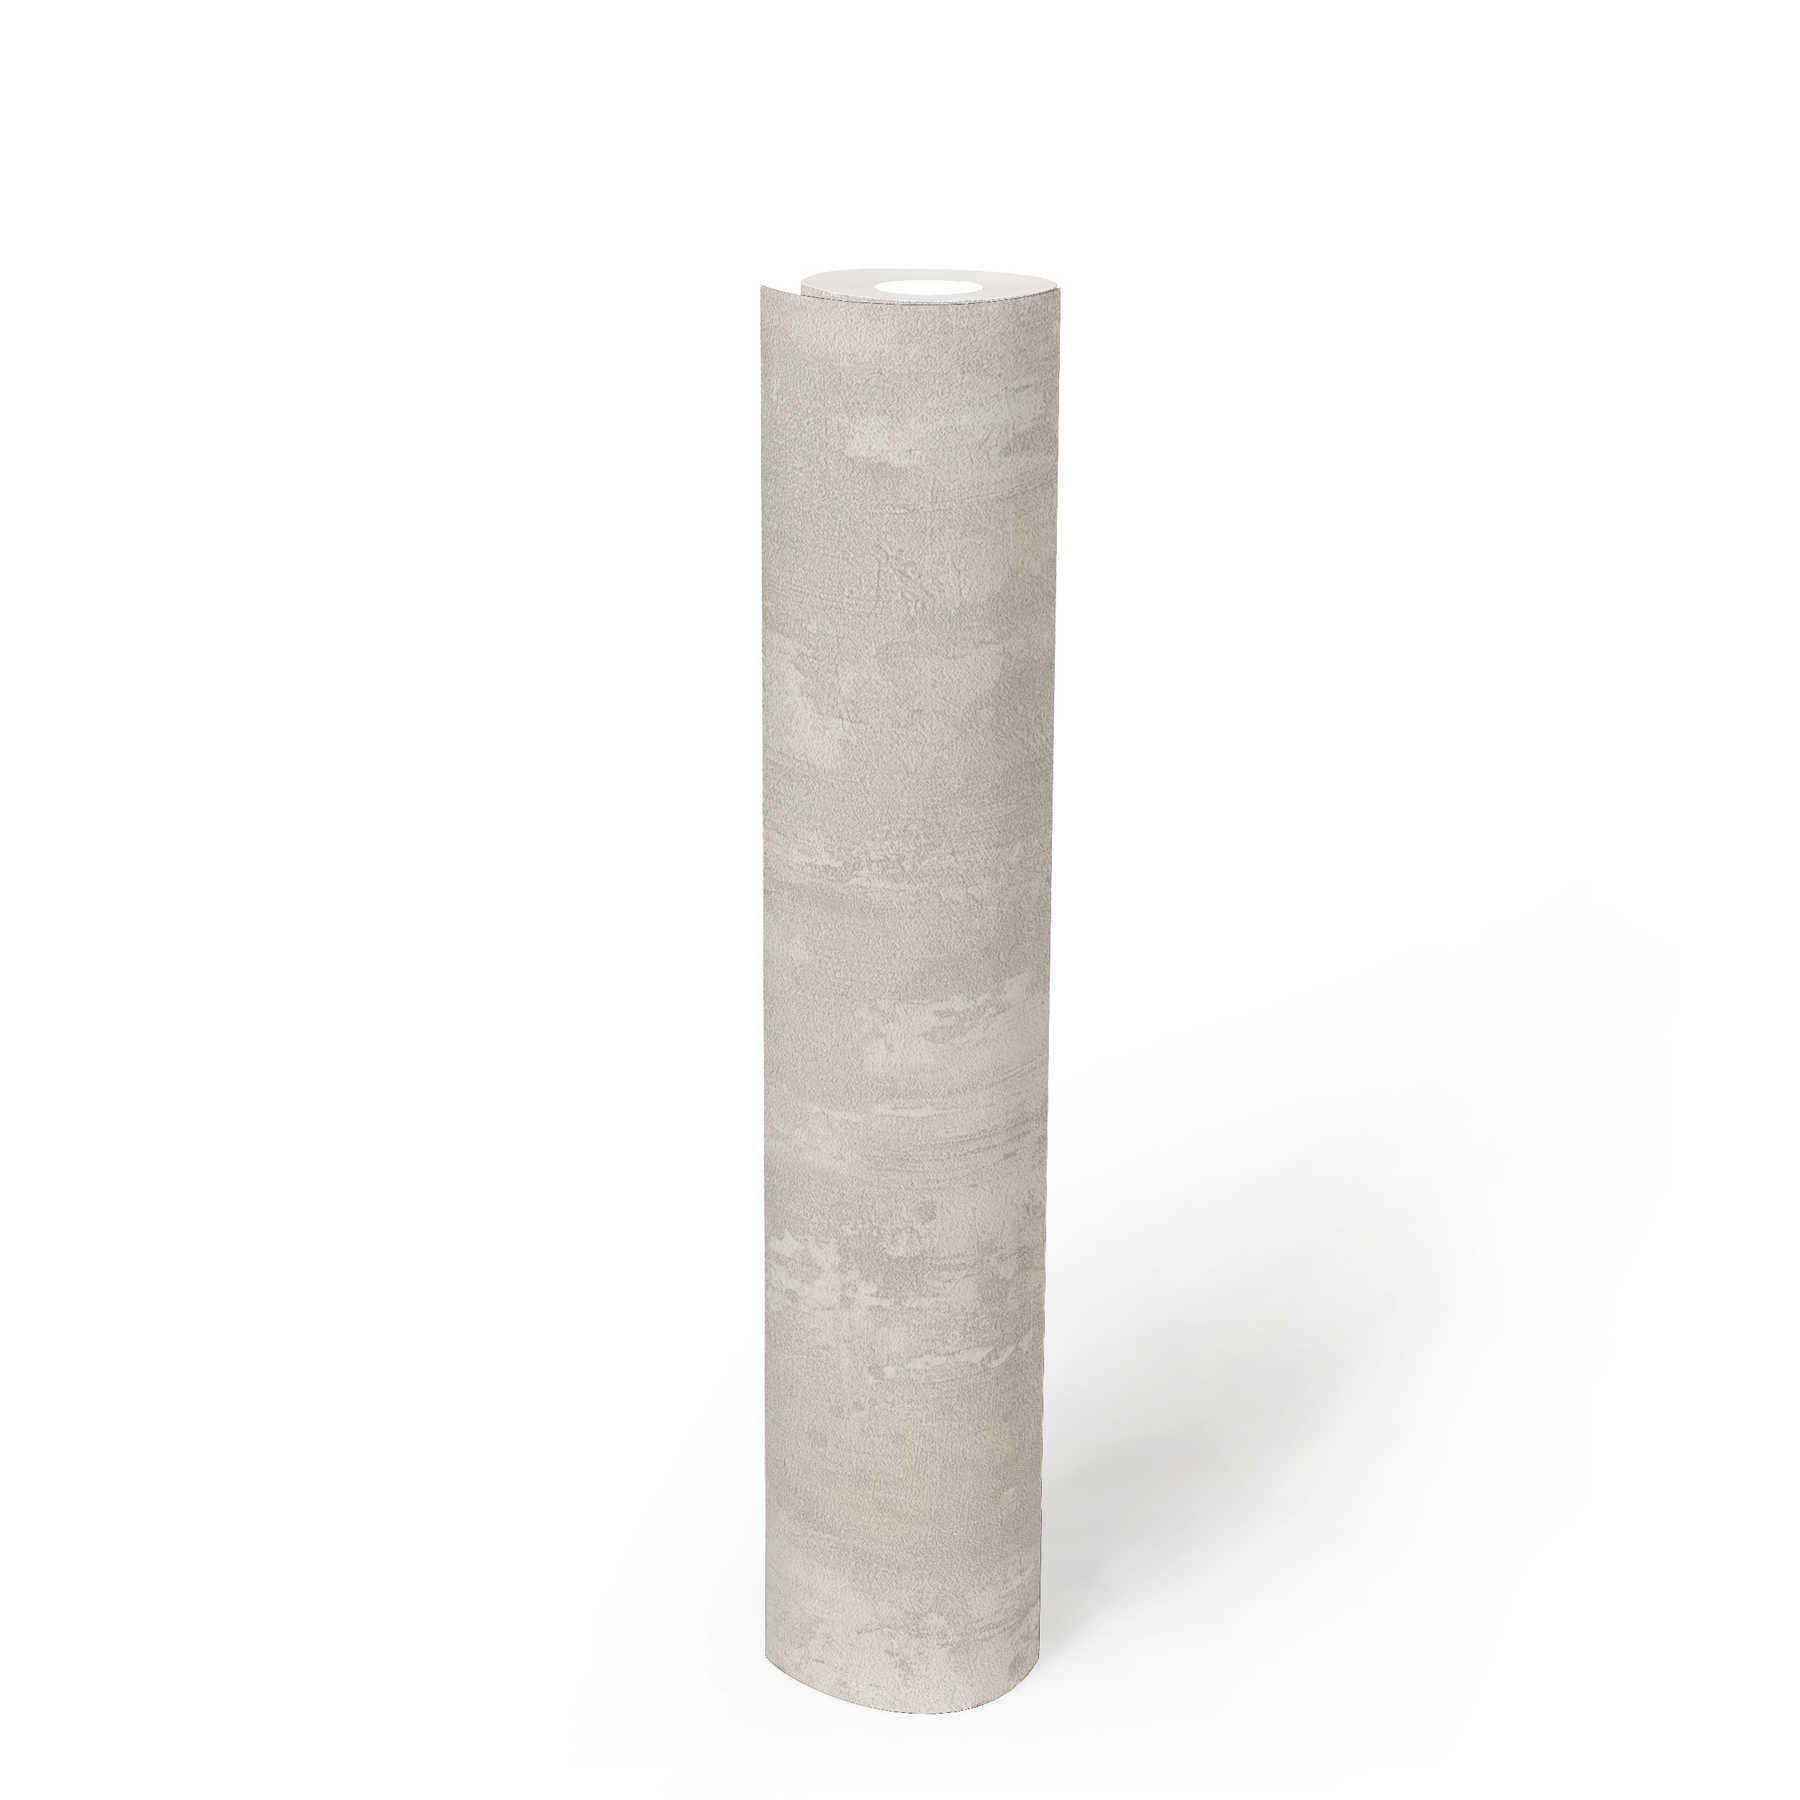             Carta da parati con struttura in gesso, aspetto concreto e sfumatura di colore - grigio, bianco
        